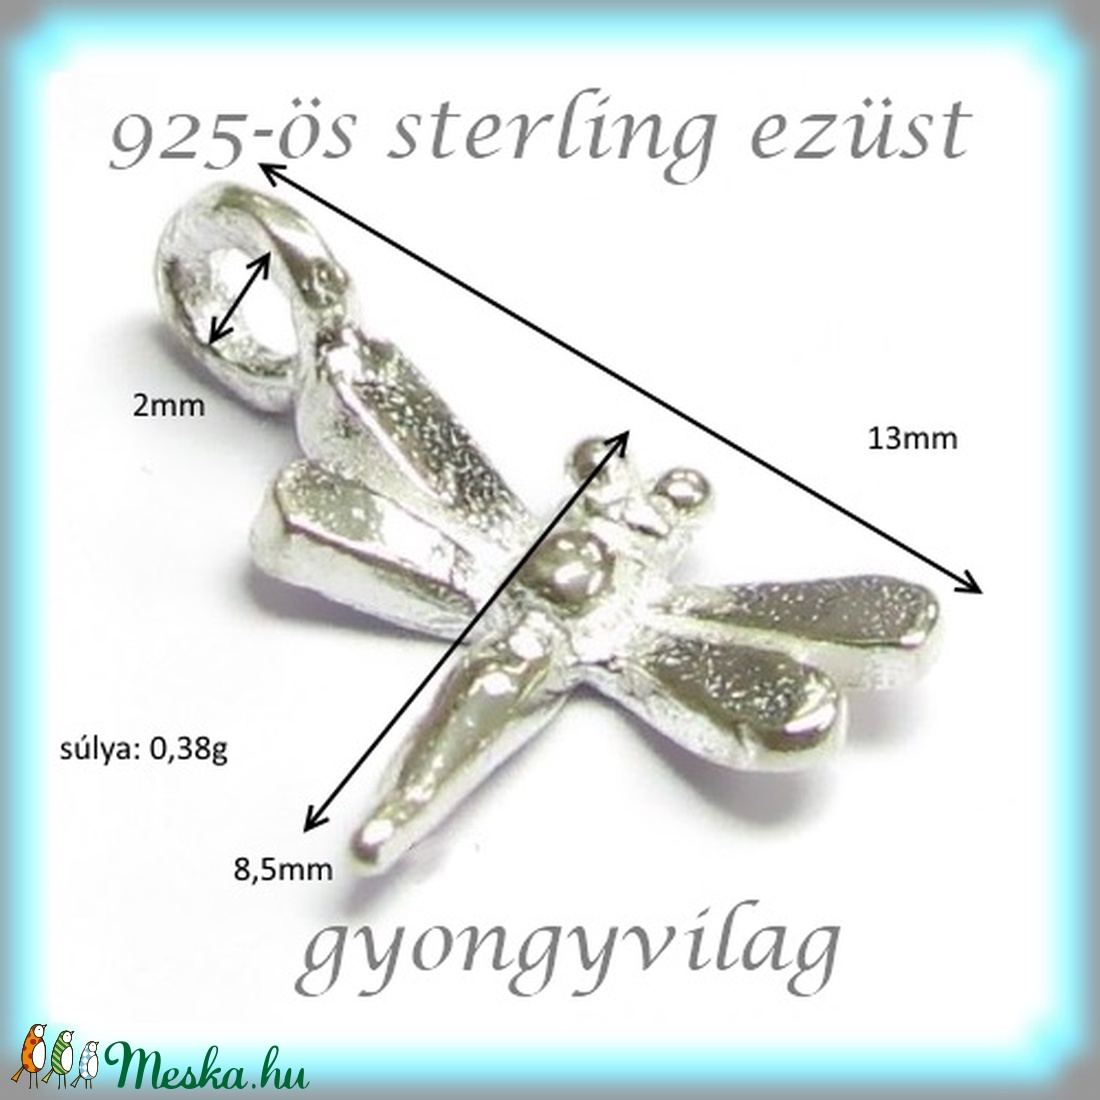 EKA 44  925-ös   ezüst kandeláber/ továbbépíthető köztes  - gyöngy, ékszerkellék - egyéb alkatrész - Meska.hu